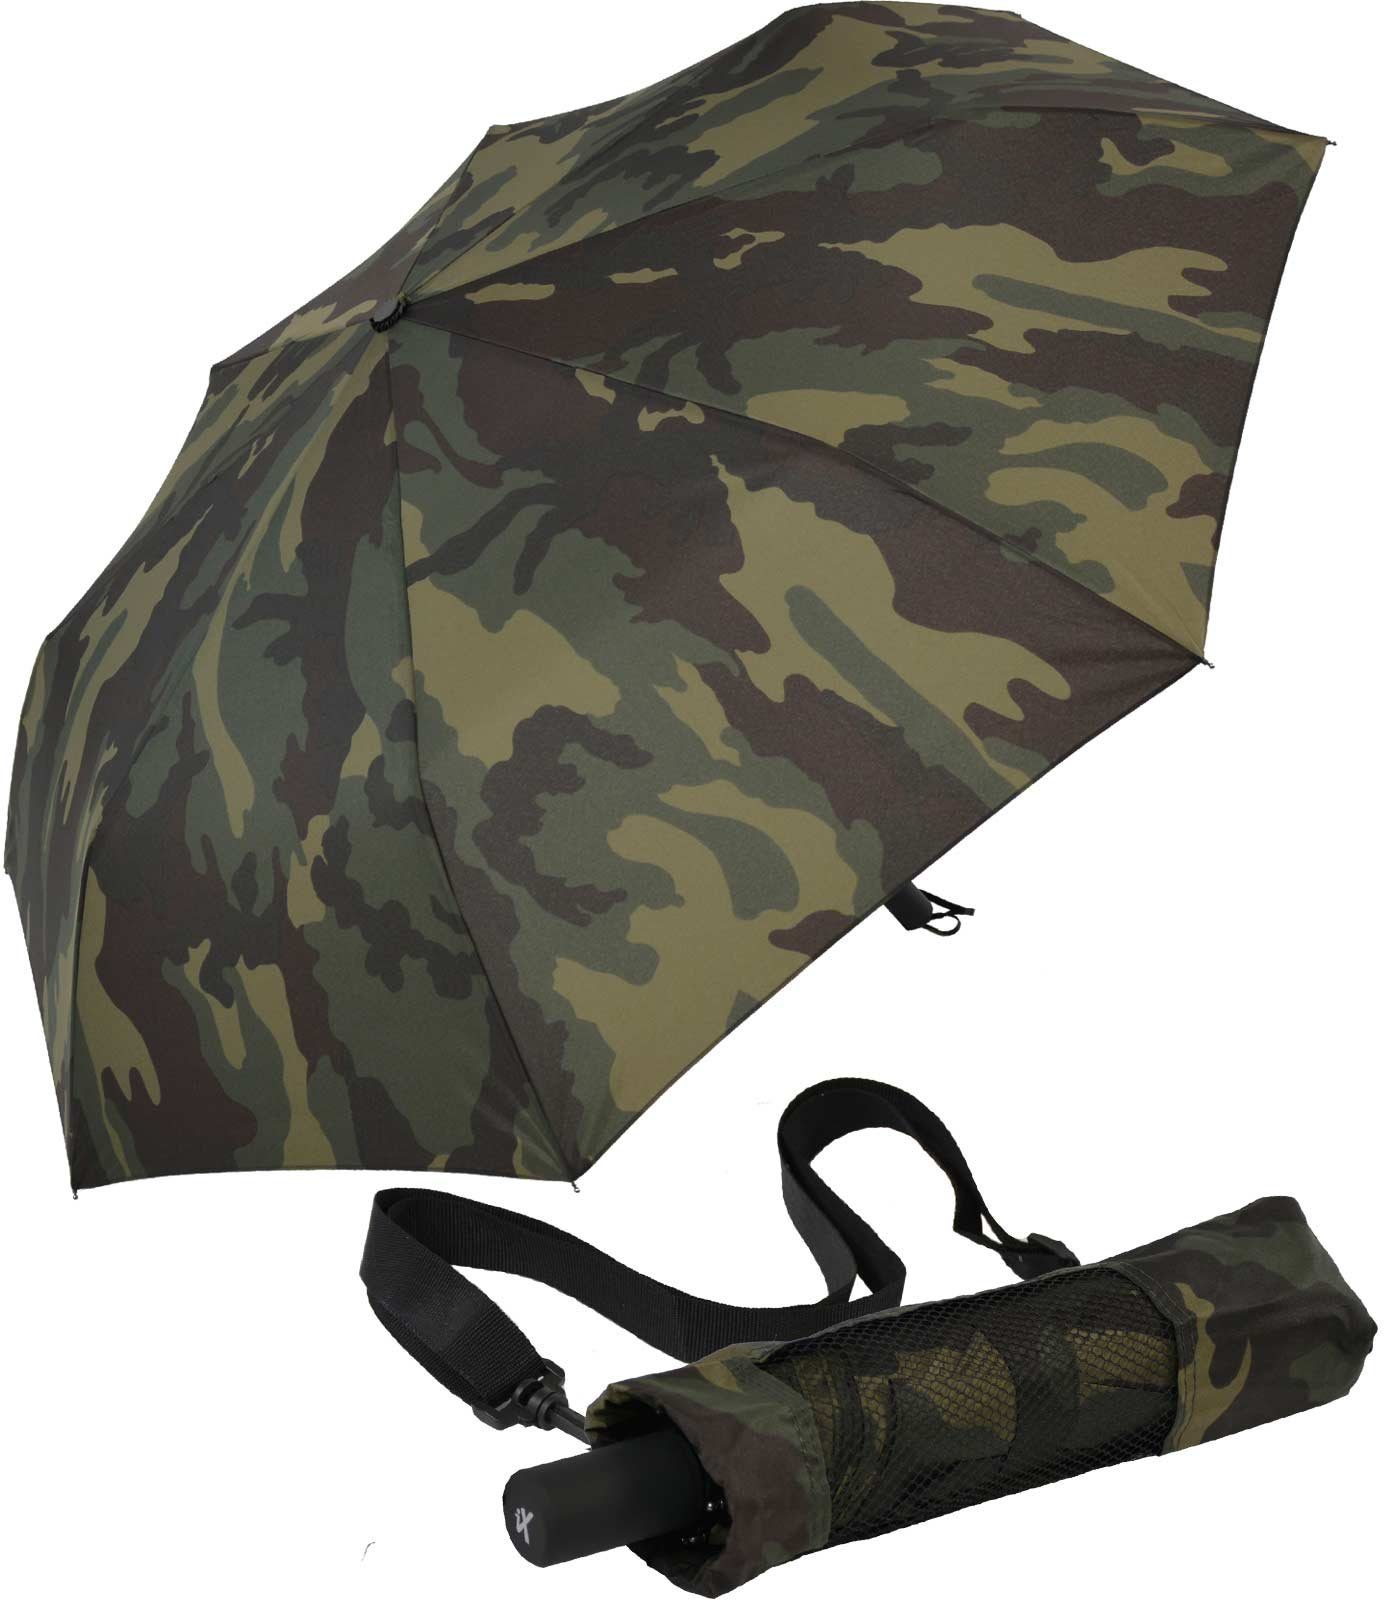 iX-brella Stockregenschirm XXL Trekking-Schirm mit farblich passender Umhängetasche - Camouflage, sehr-groß